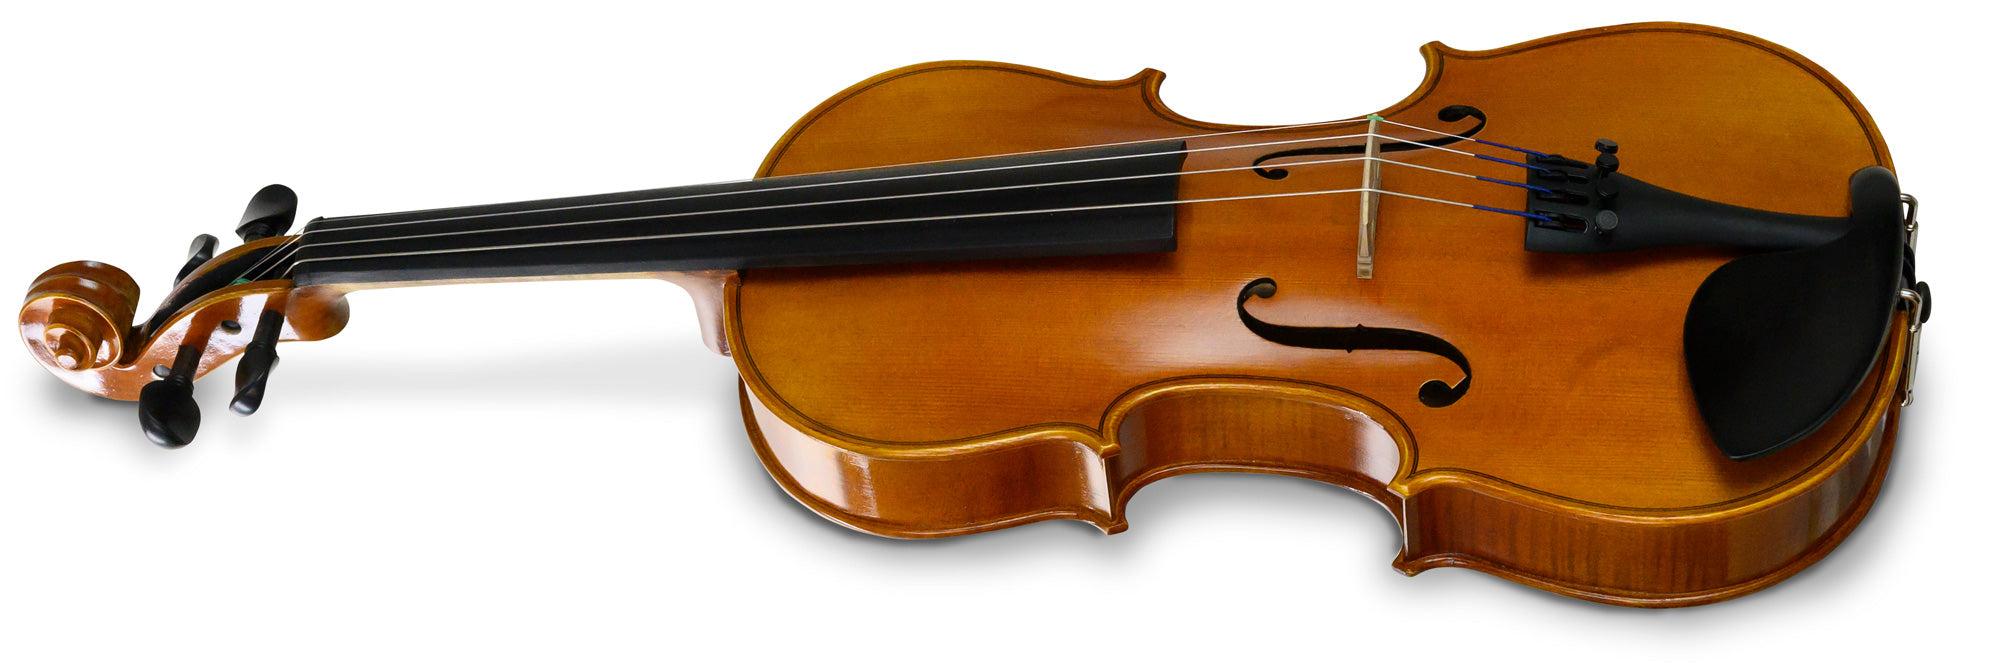 Violins | Violin Sales and Rentals - Violas, Cellos and Accessories